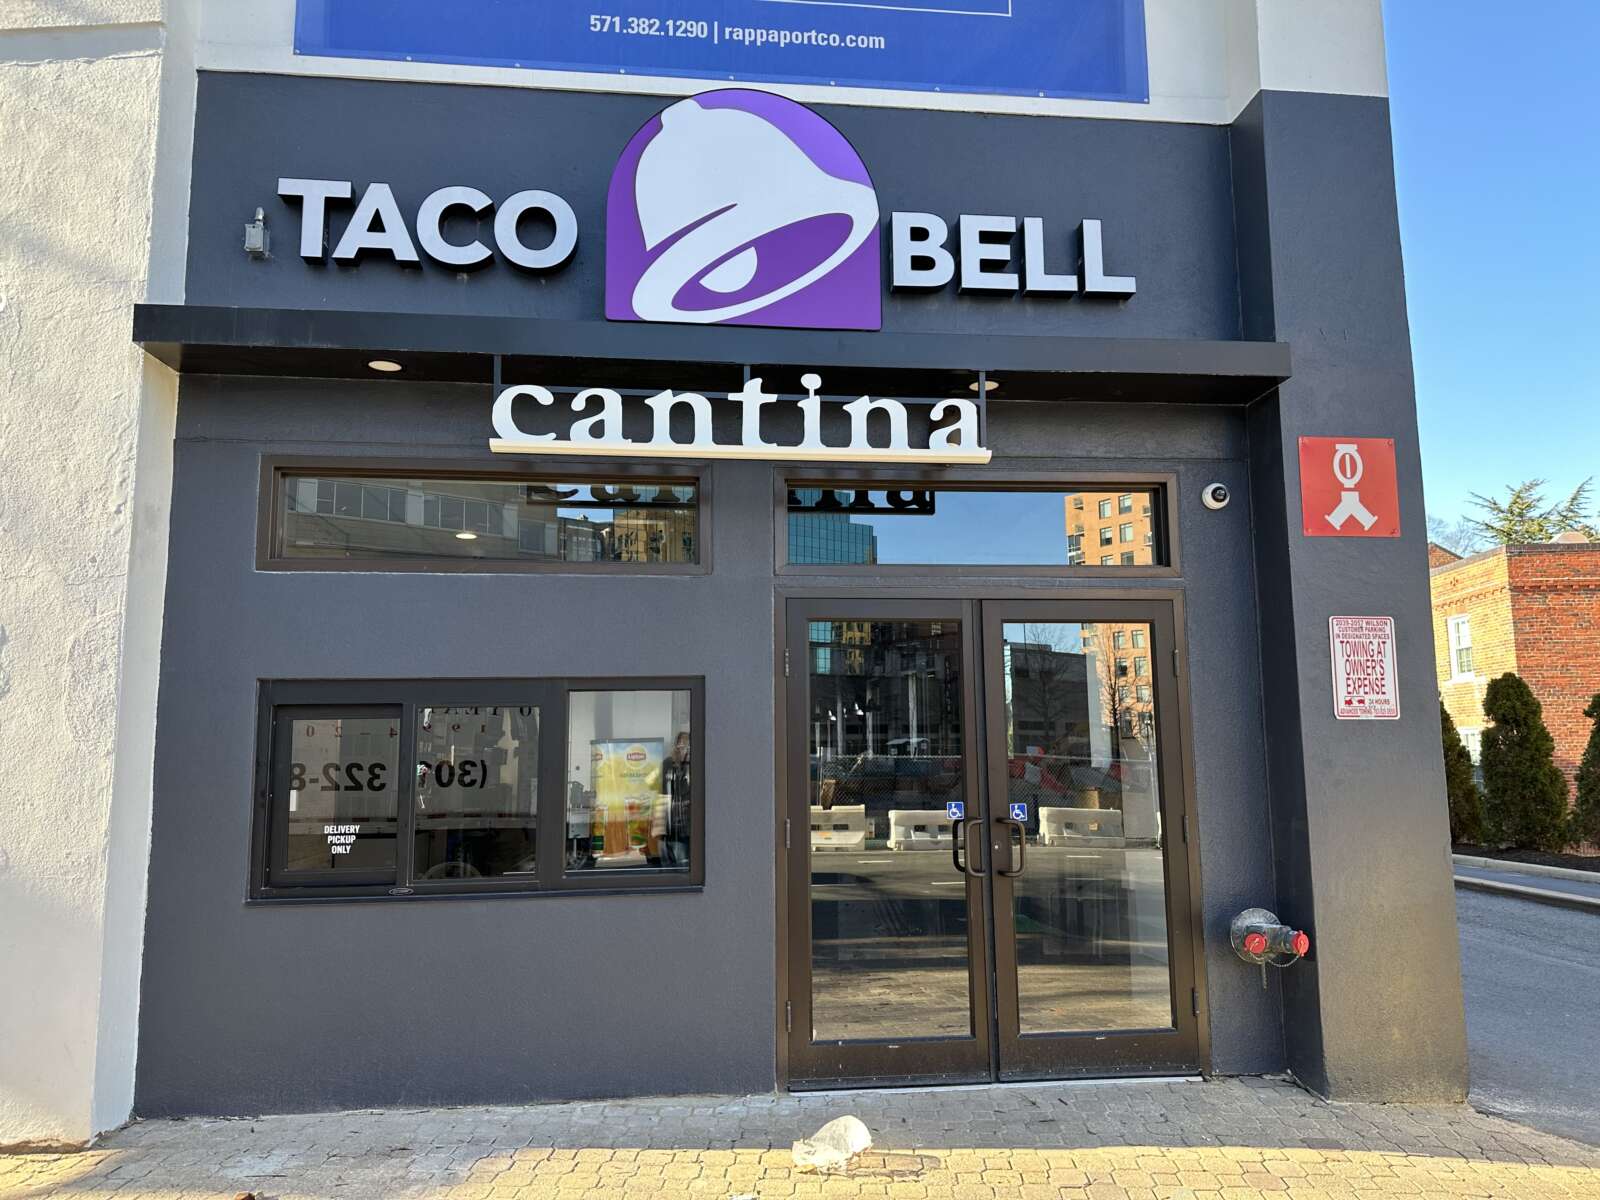  taco bell cantina